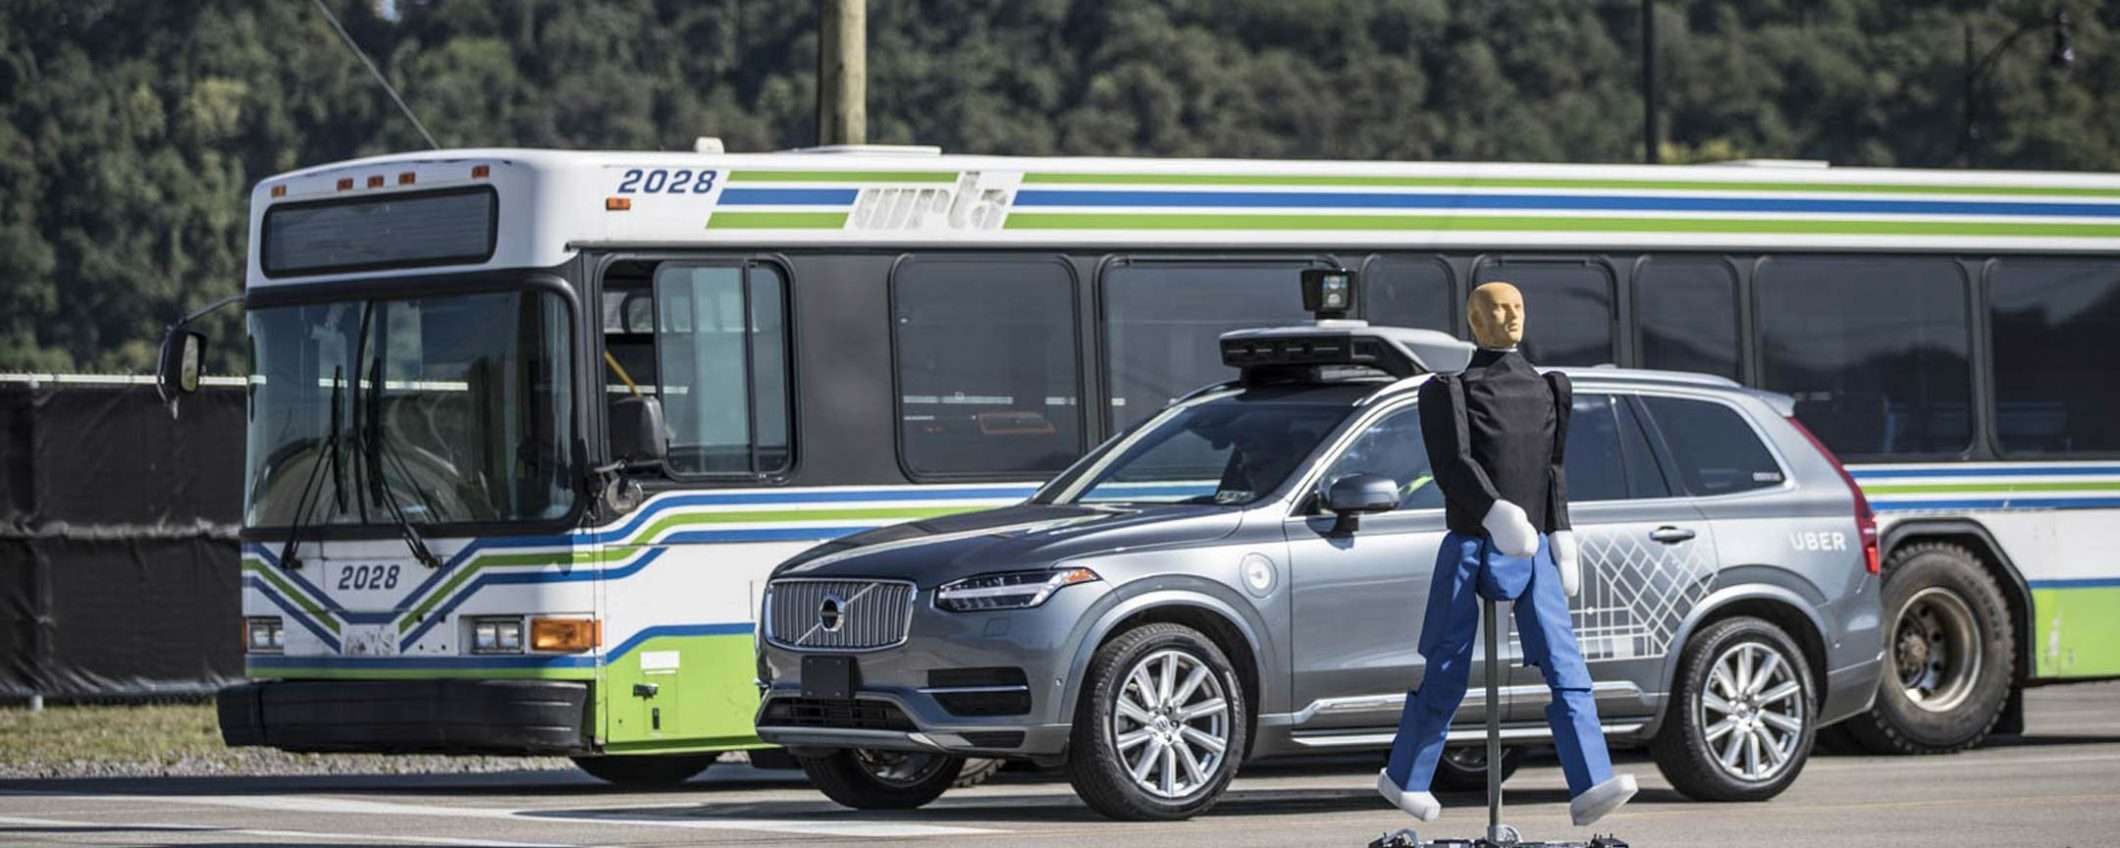 Uber non è responsabile per l'incidente del 2018